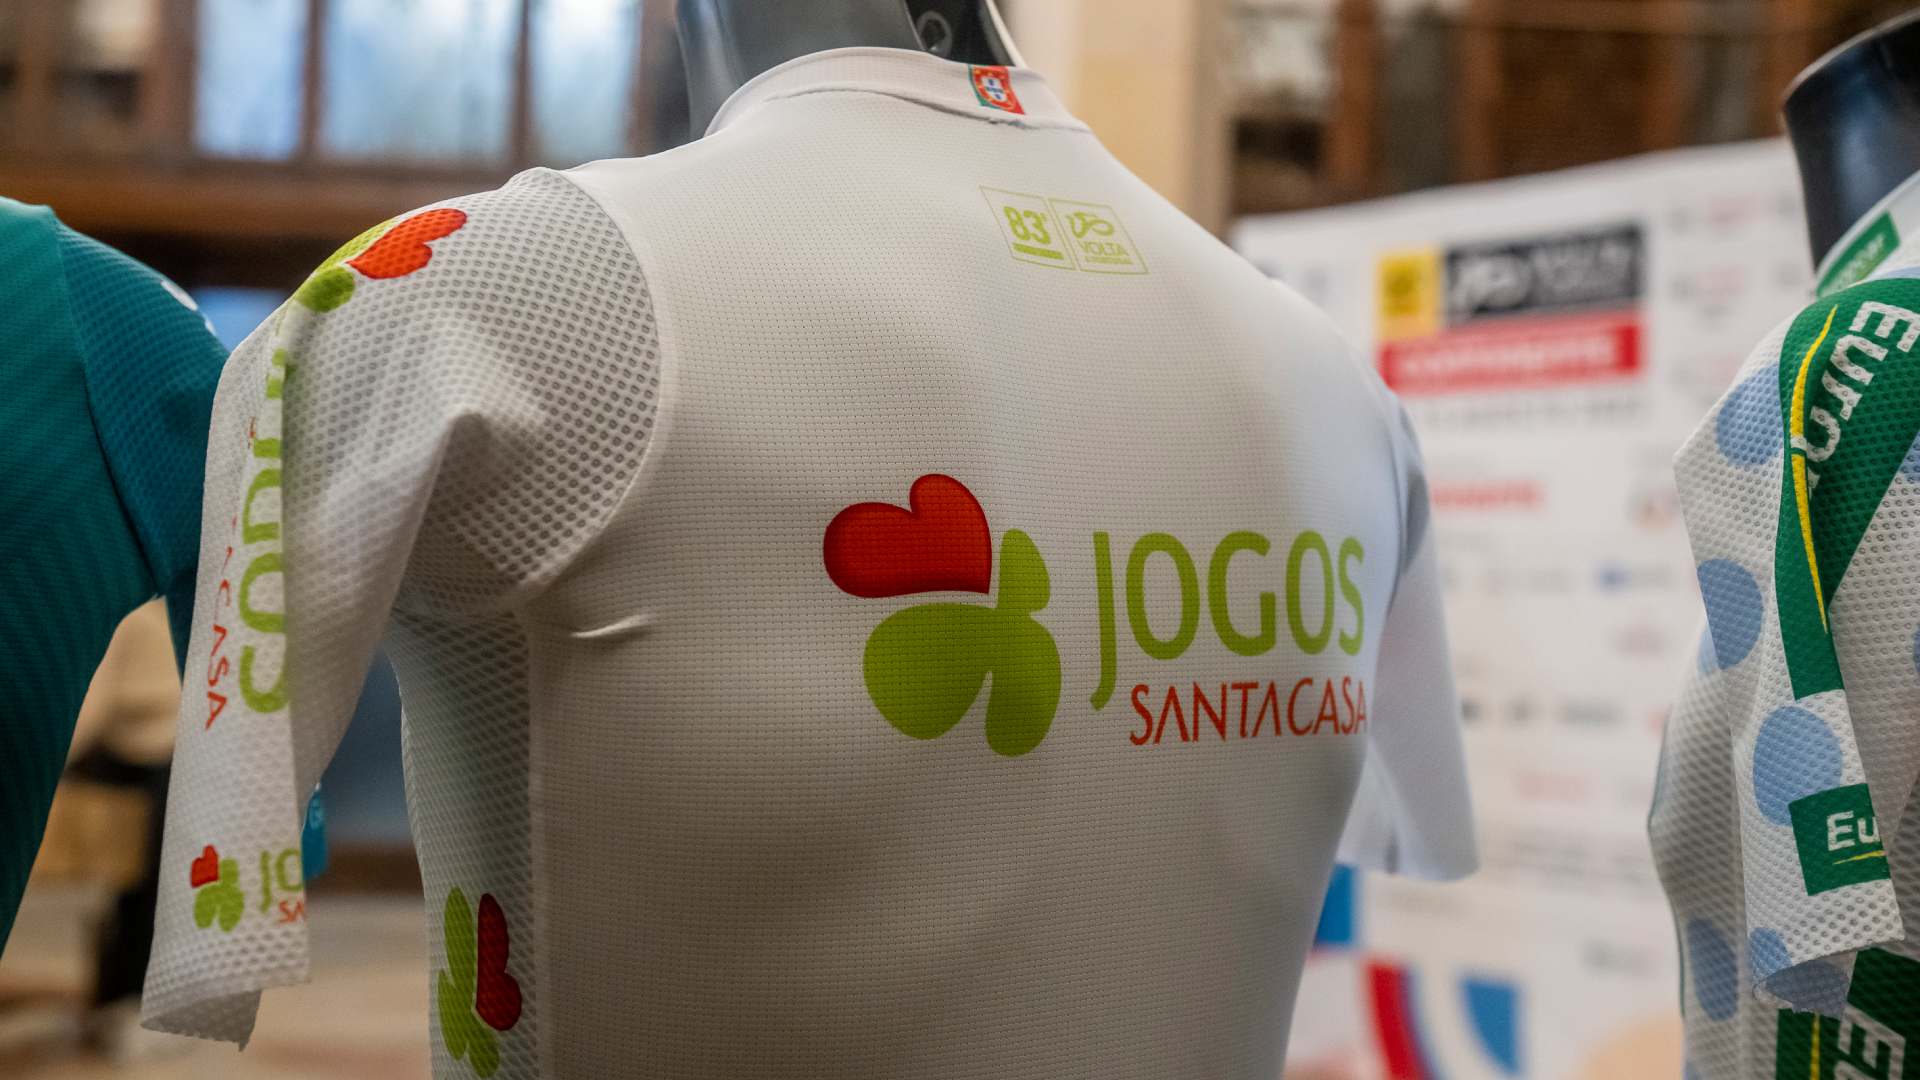 Ciclismo feminino volta às estradas nacionais com o apoio dos Jogos Santa  Casa - Santa Casa da Misericórdia de Lisboa